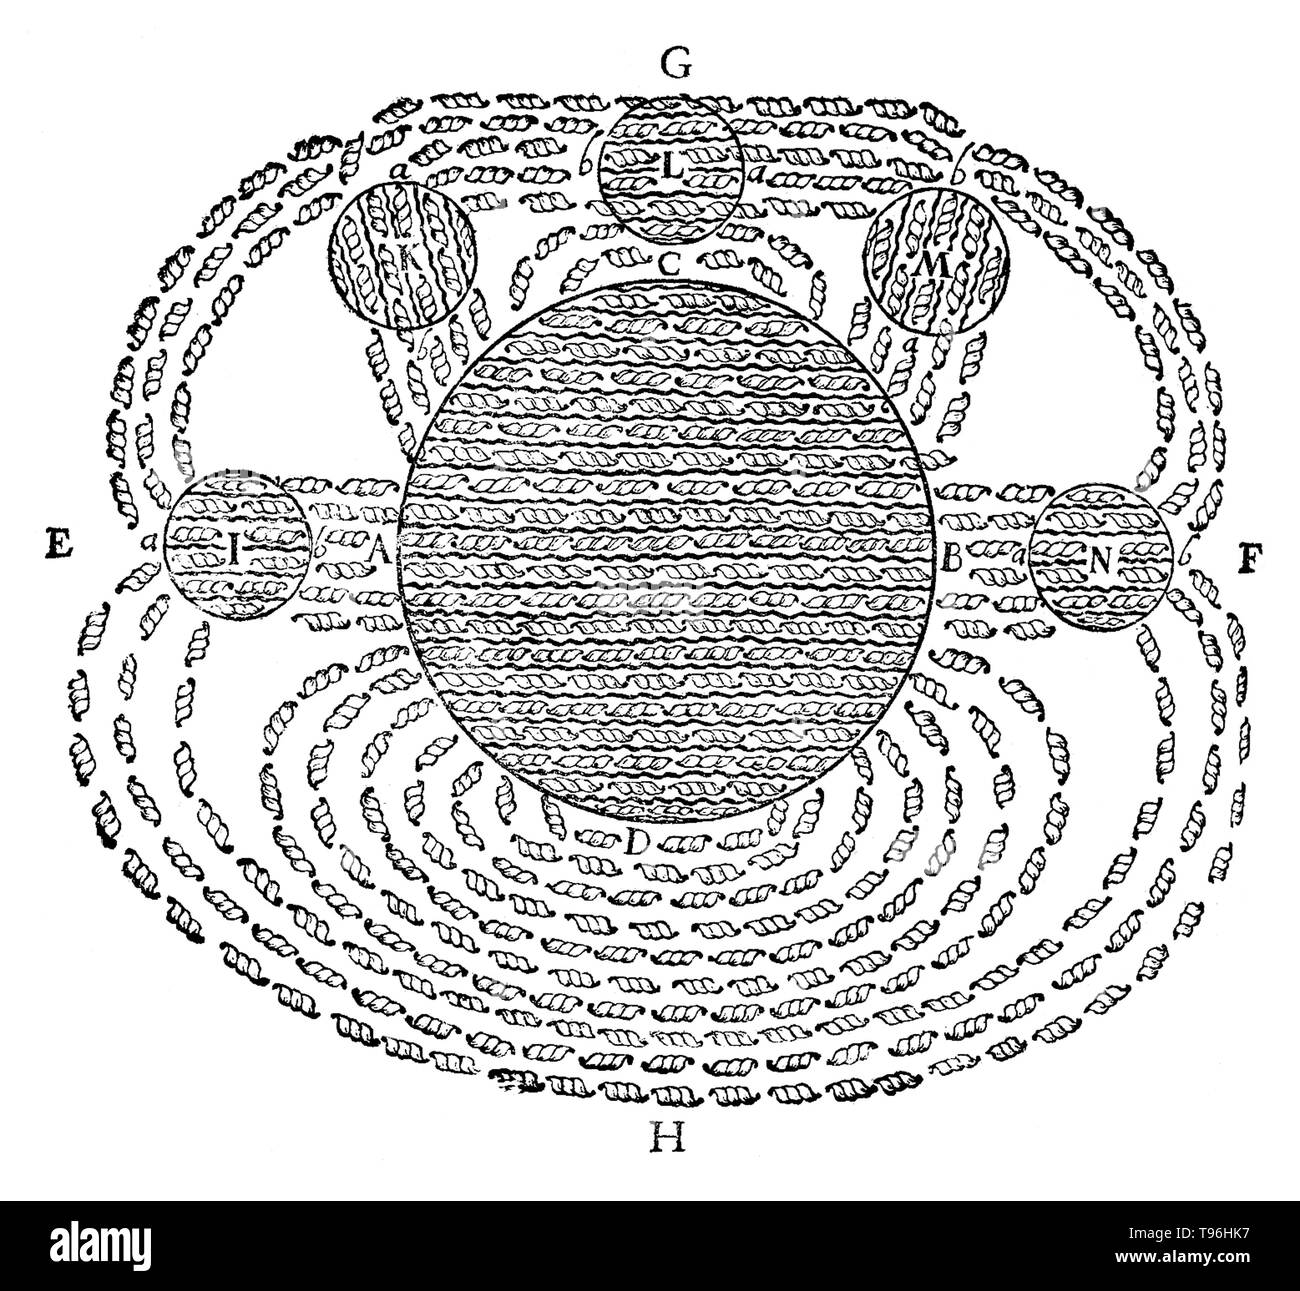 Magnetfeld von René Descartes, von seiner Principia Philosophiae, 1644. Dies war eine der ersten Zeichnungen des Begriffs ein Magnetfeld. Es zeigt das magnetische Feld der Erde (D) zieht mehrere Runde lodestones (I, K, L, M, N) und illustriert seine Theorie des Magnetismus. Stockfoto